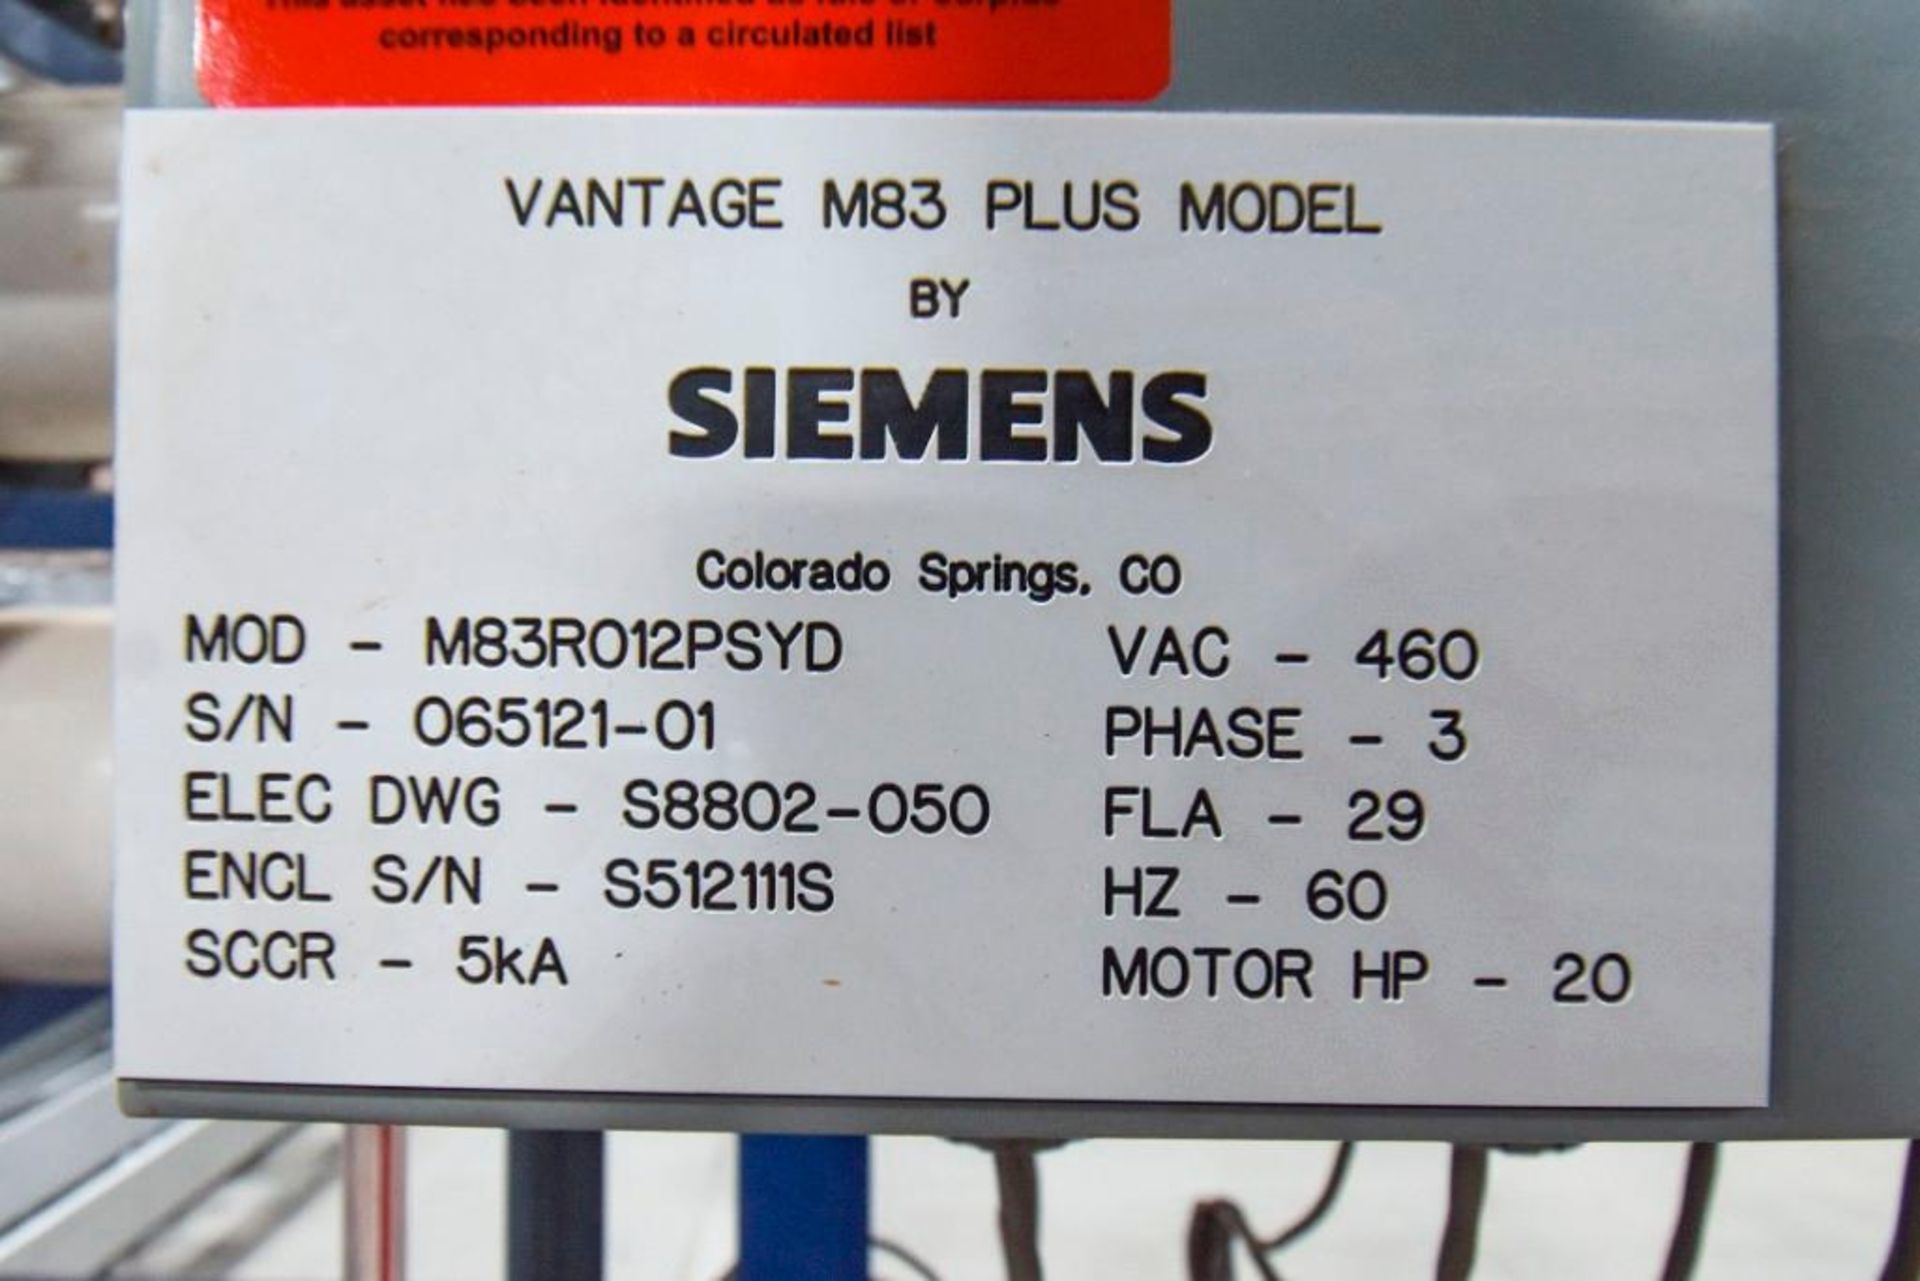 Siemens Vantage M83 Plus Reverse Osmosis Water System - Image 2 of 8